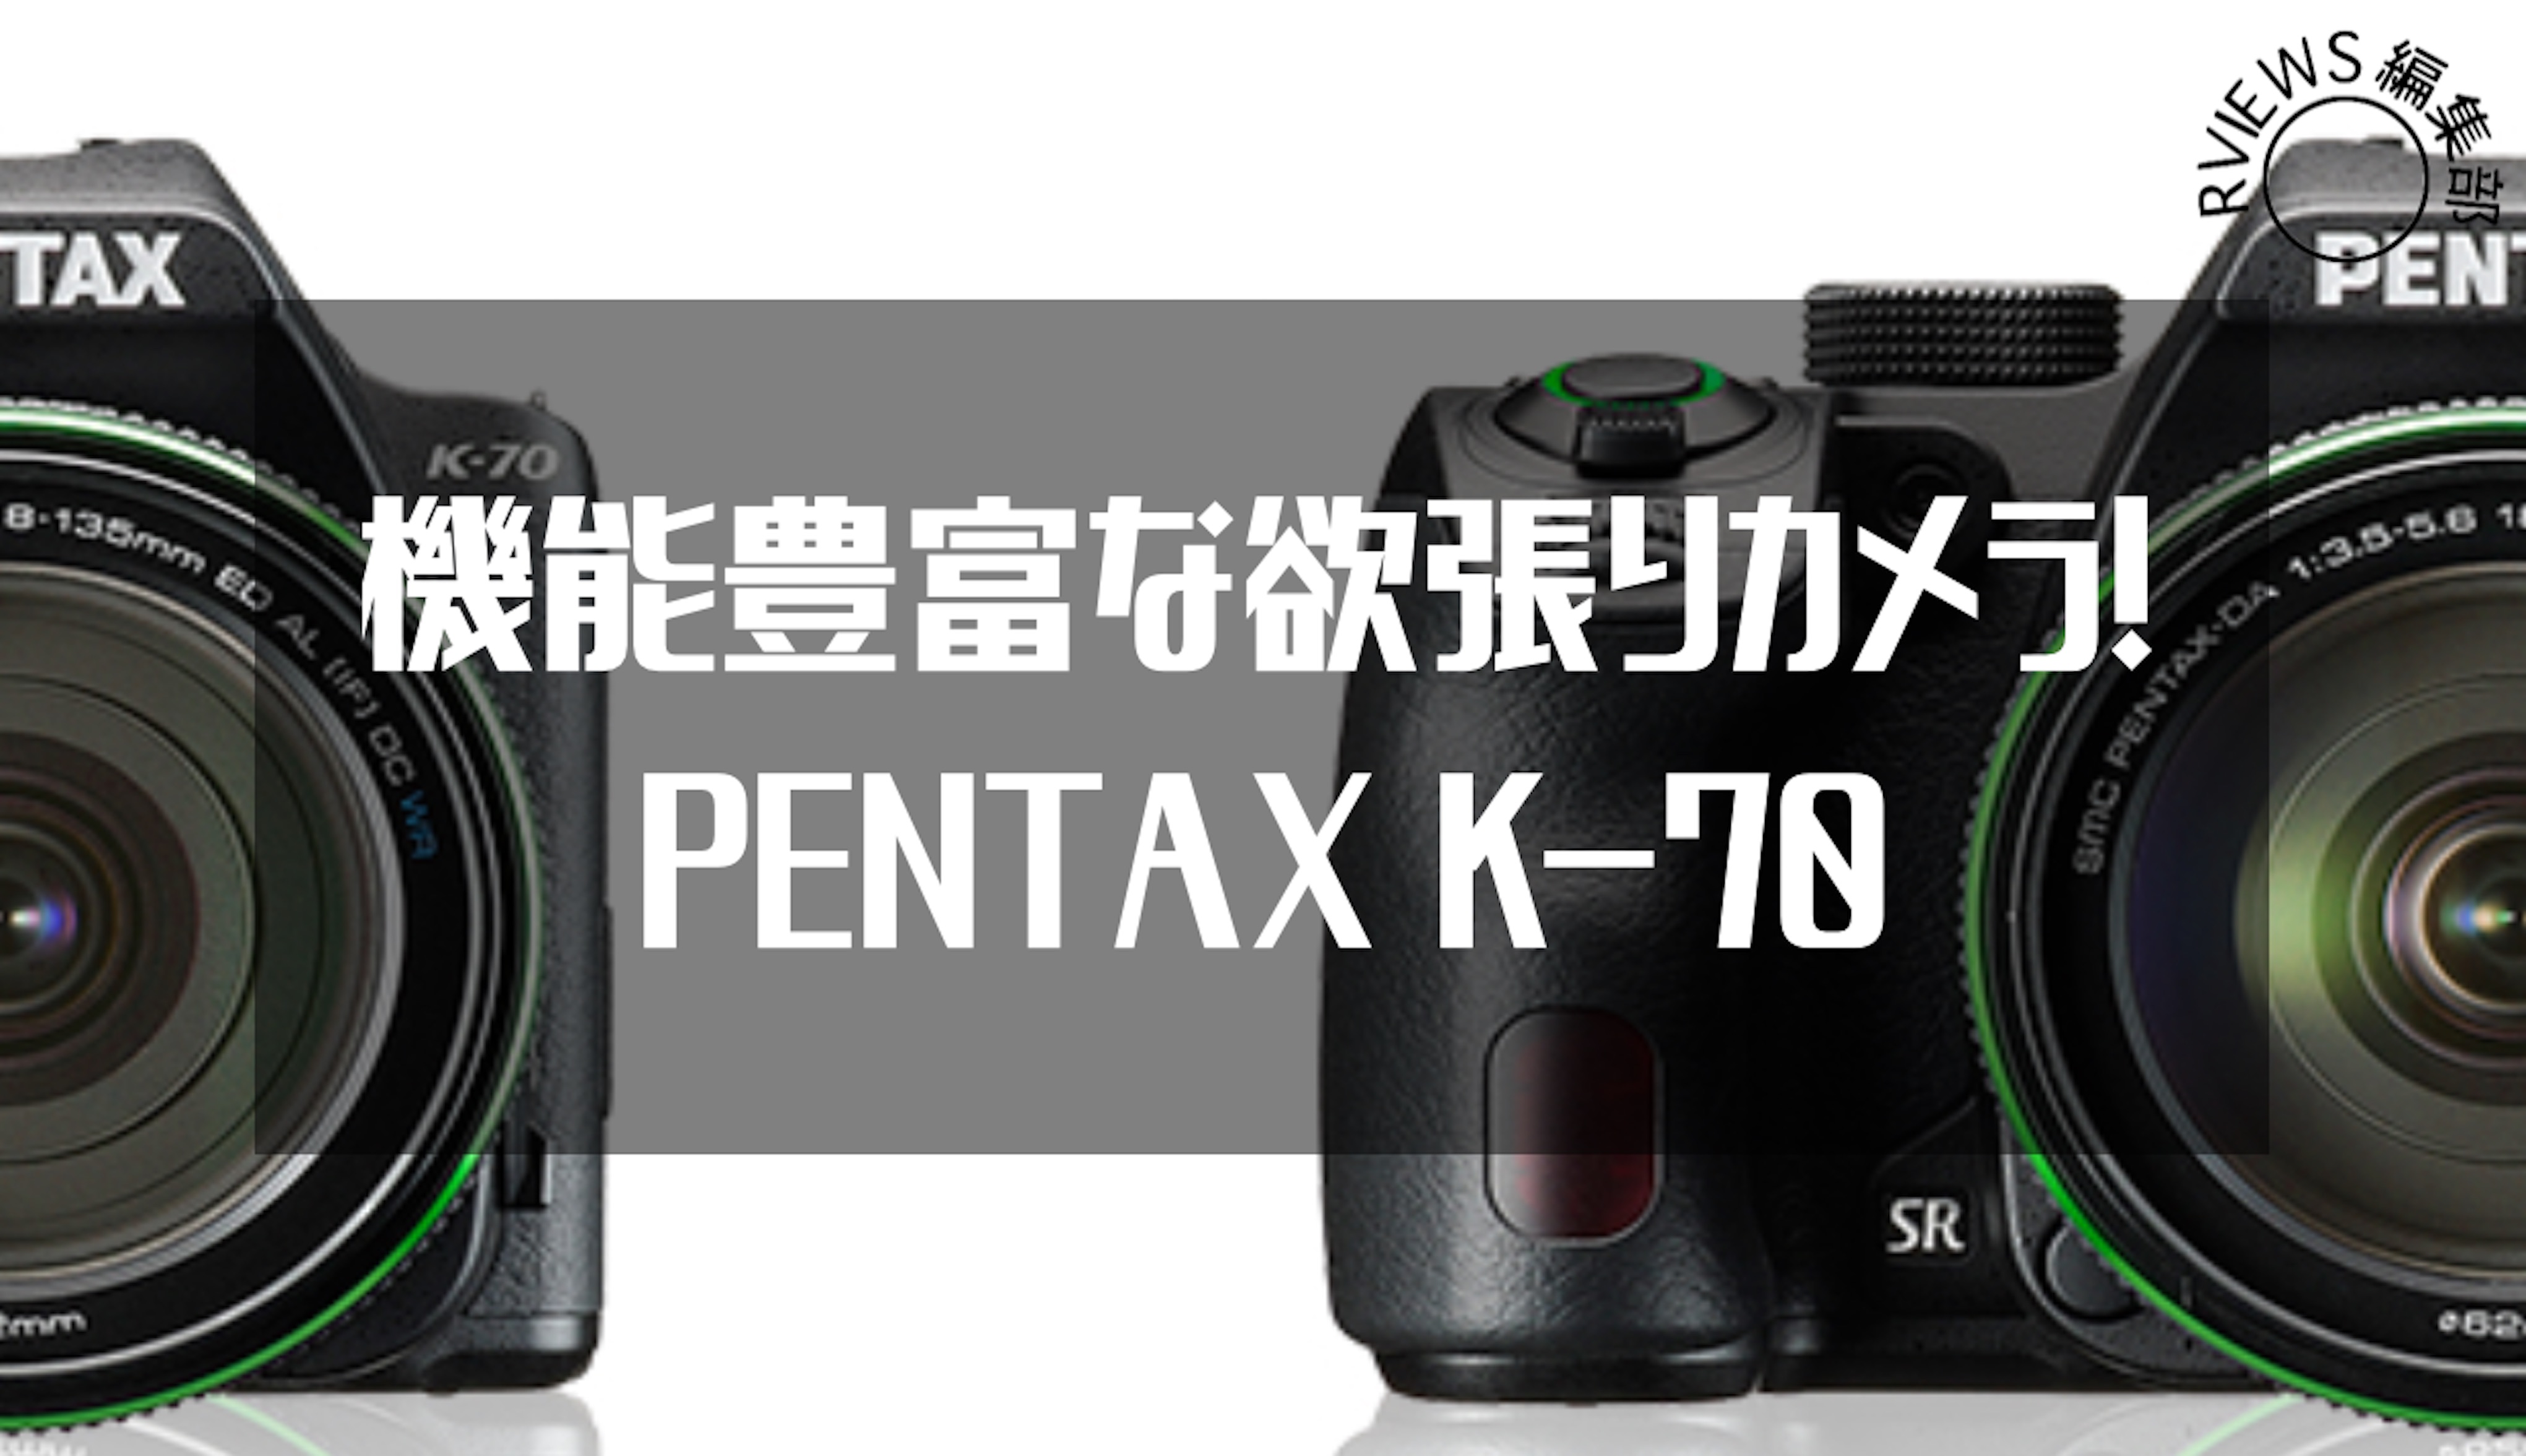 機能豊富な欲張りカメラ! PENTAX K-70レビュー | Picky's